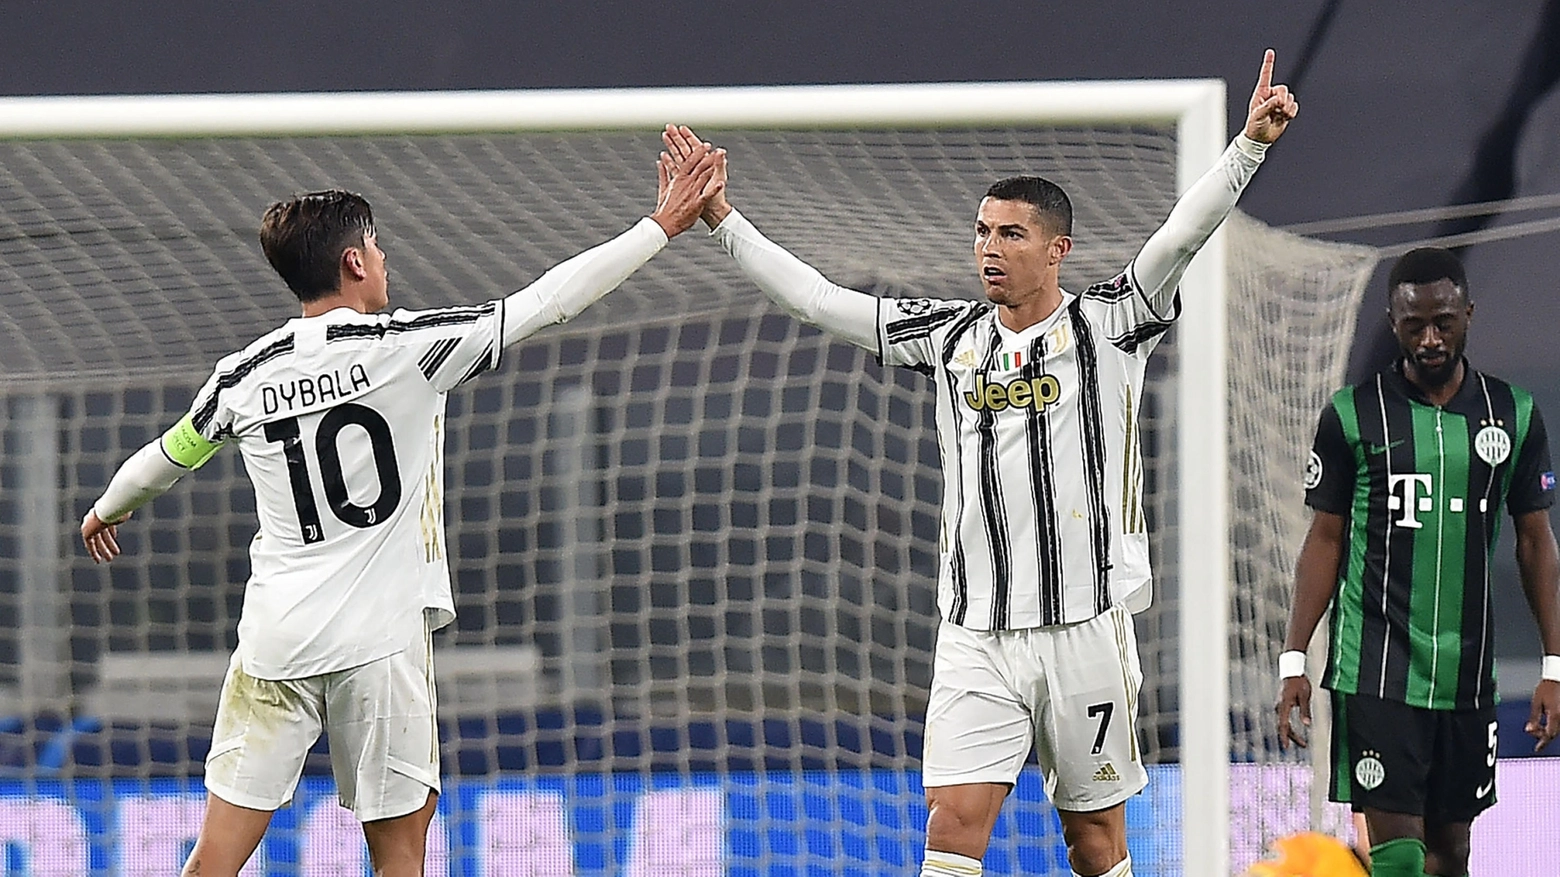 L'esultanza di Ronaldo dopo il gol al Ferencvaros 